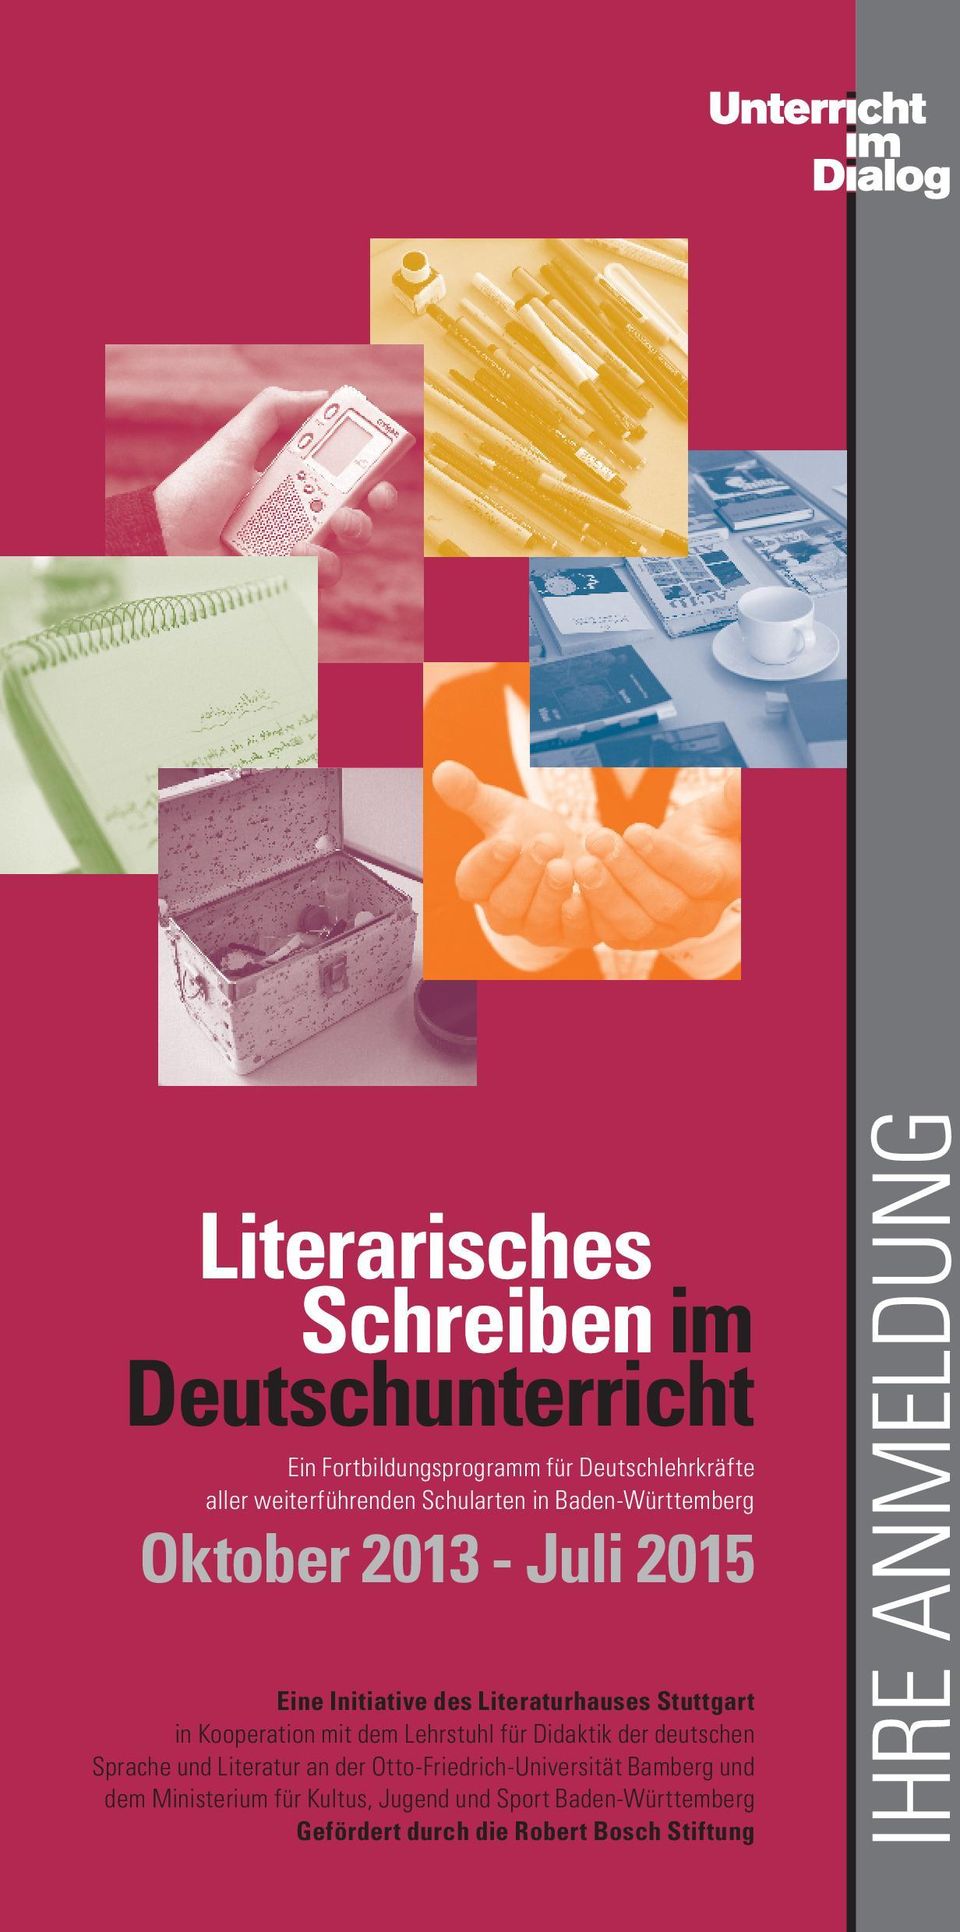 Kooperation mit dem Lehrstuhl für Didaktik der deutschen Sprache und Literatur an der Otto-Friedrich-Universität